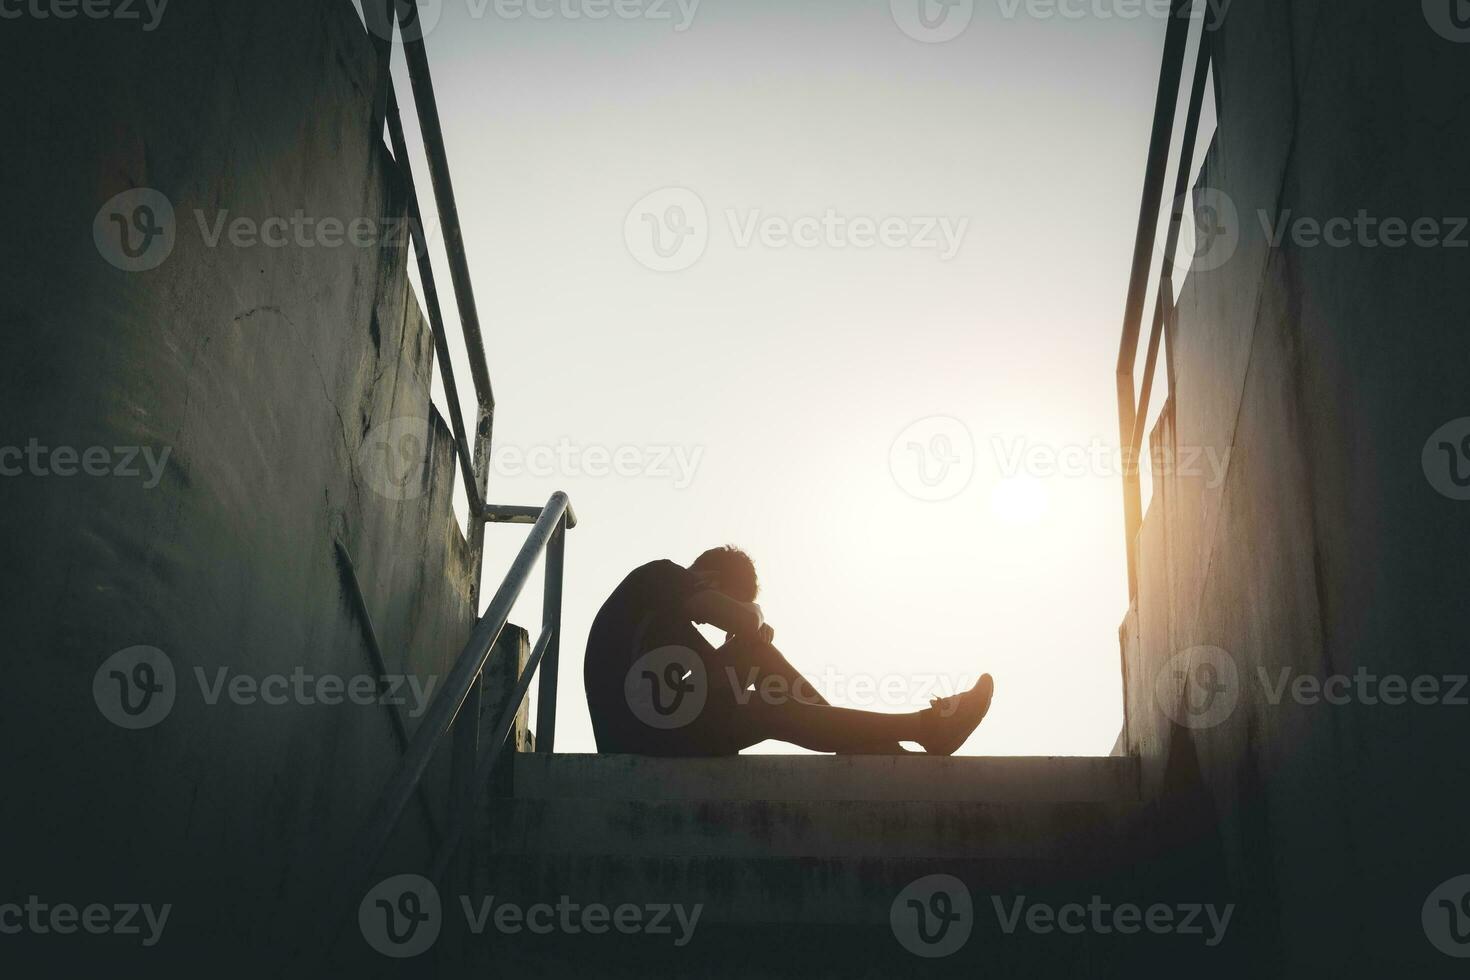 staglia di triste foto. solitario uomo seduta su il floor.he è infelice e triste.he è depressione.non amare,infelice,fallire.foto concetto per malattia e depressione. foto